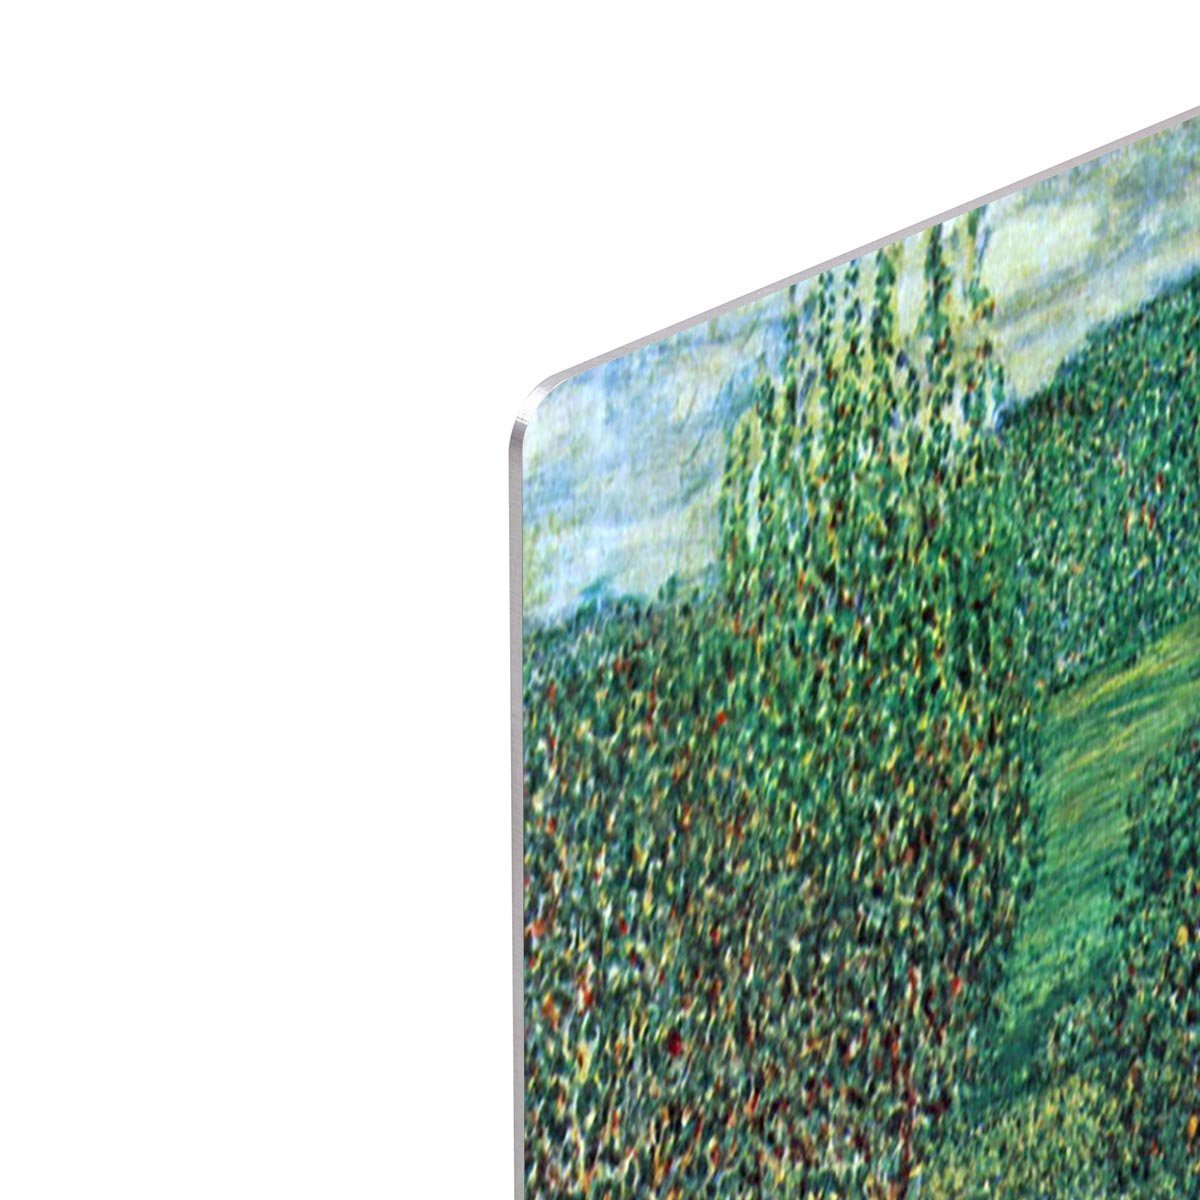 Garden landscape by Klimt HD Metal Print